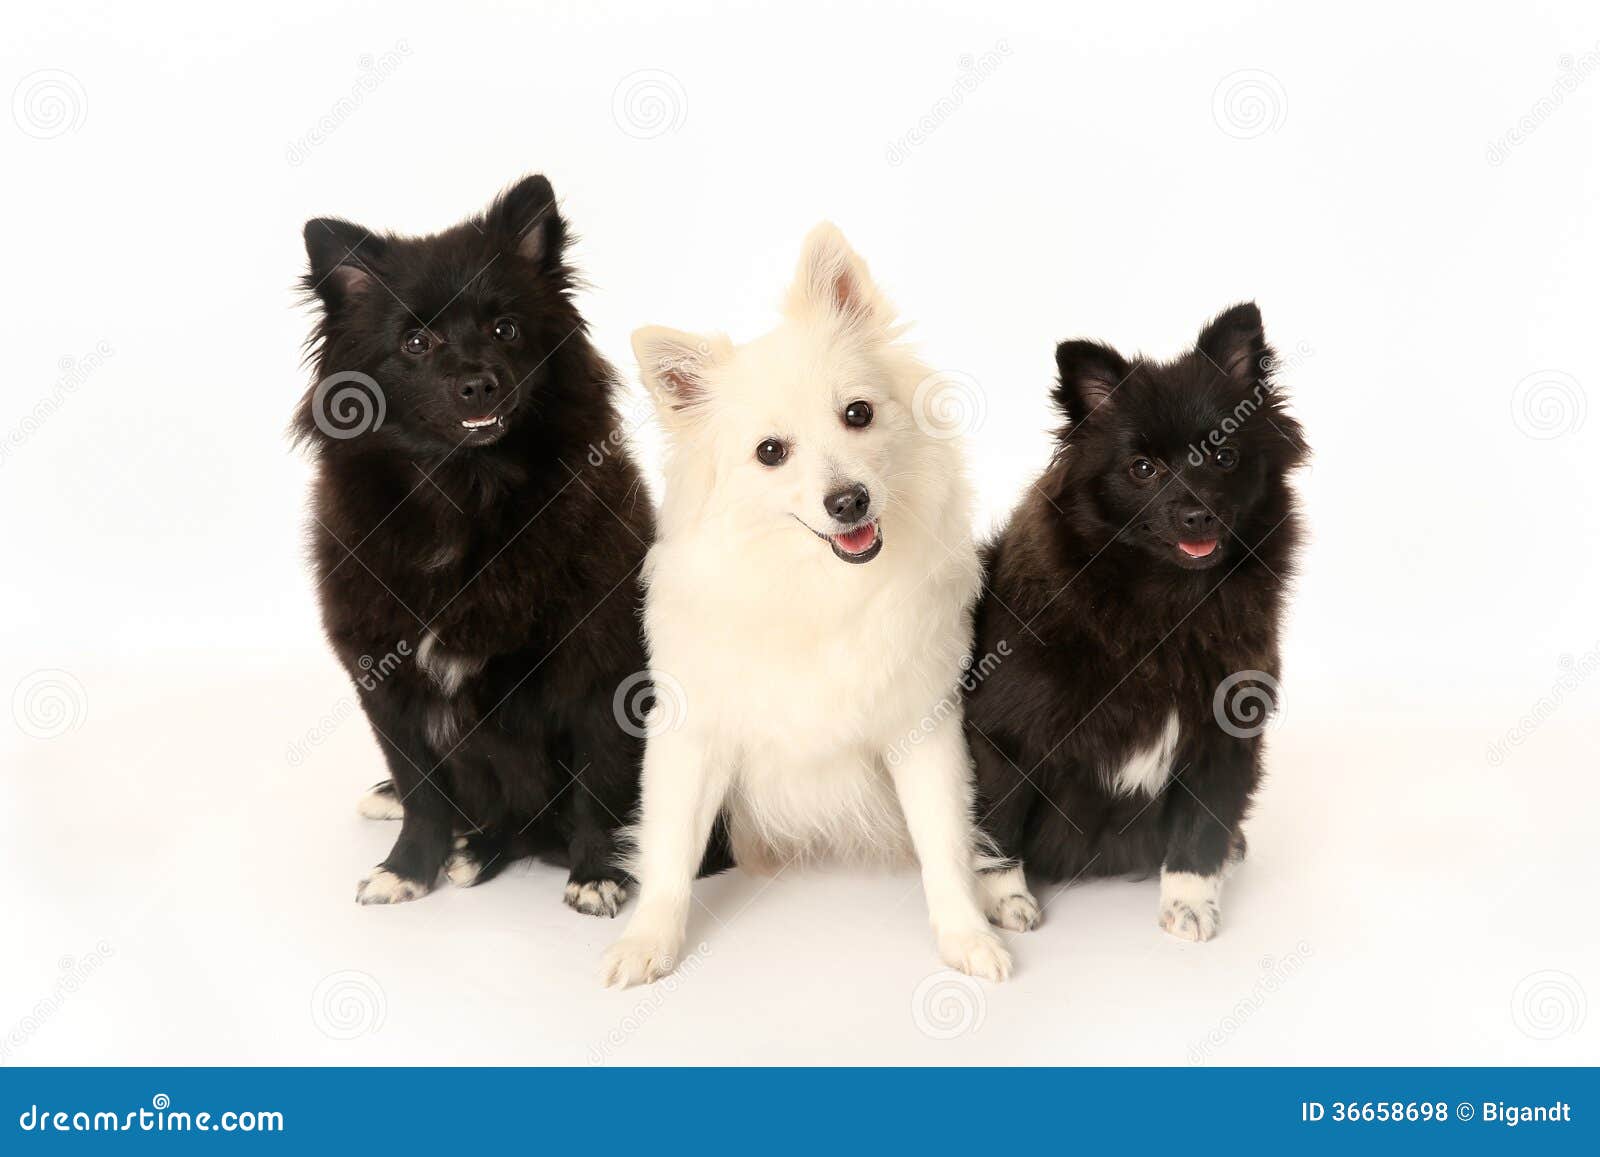 three volpino italiano dogs